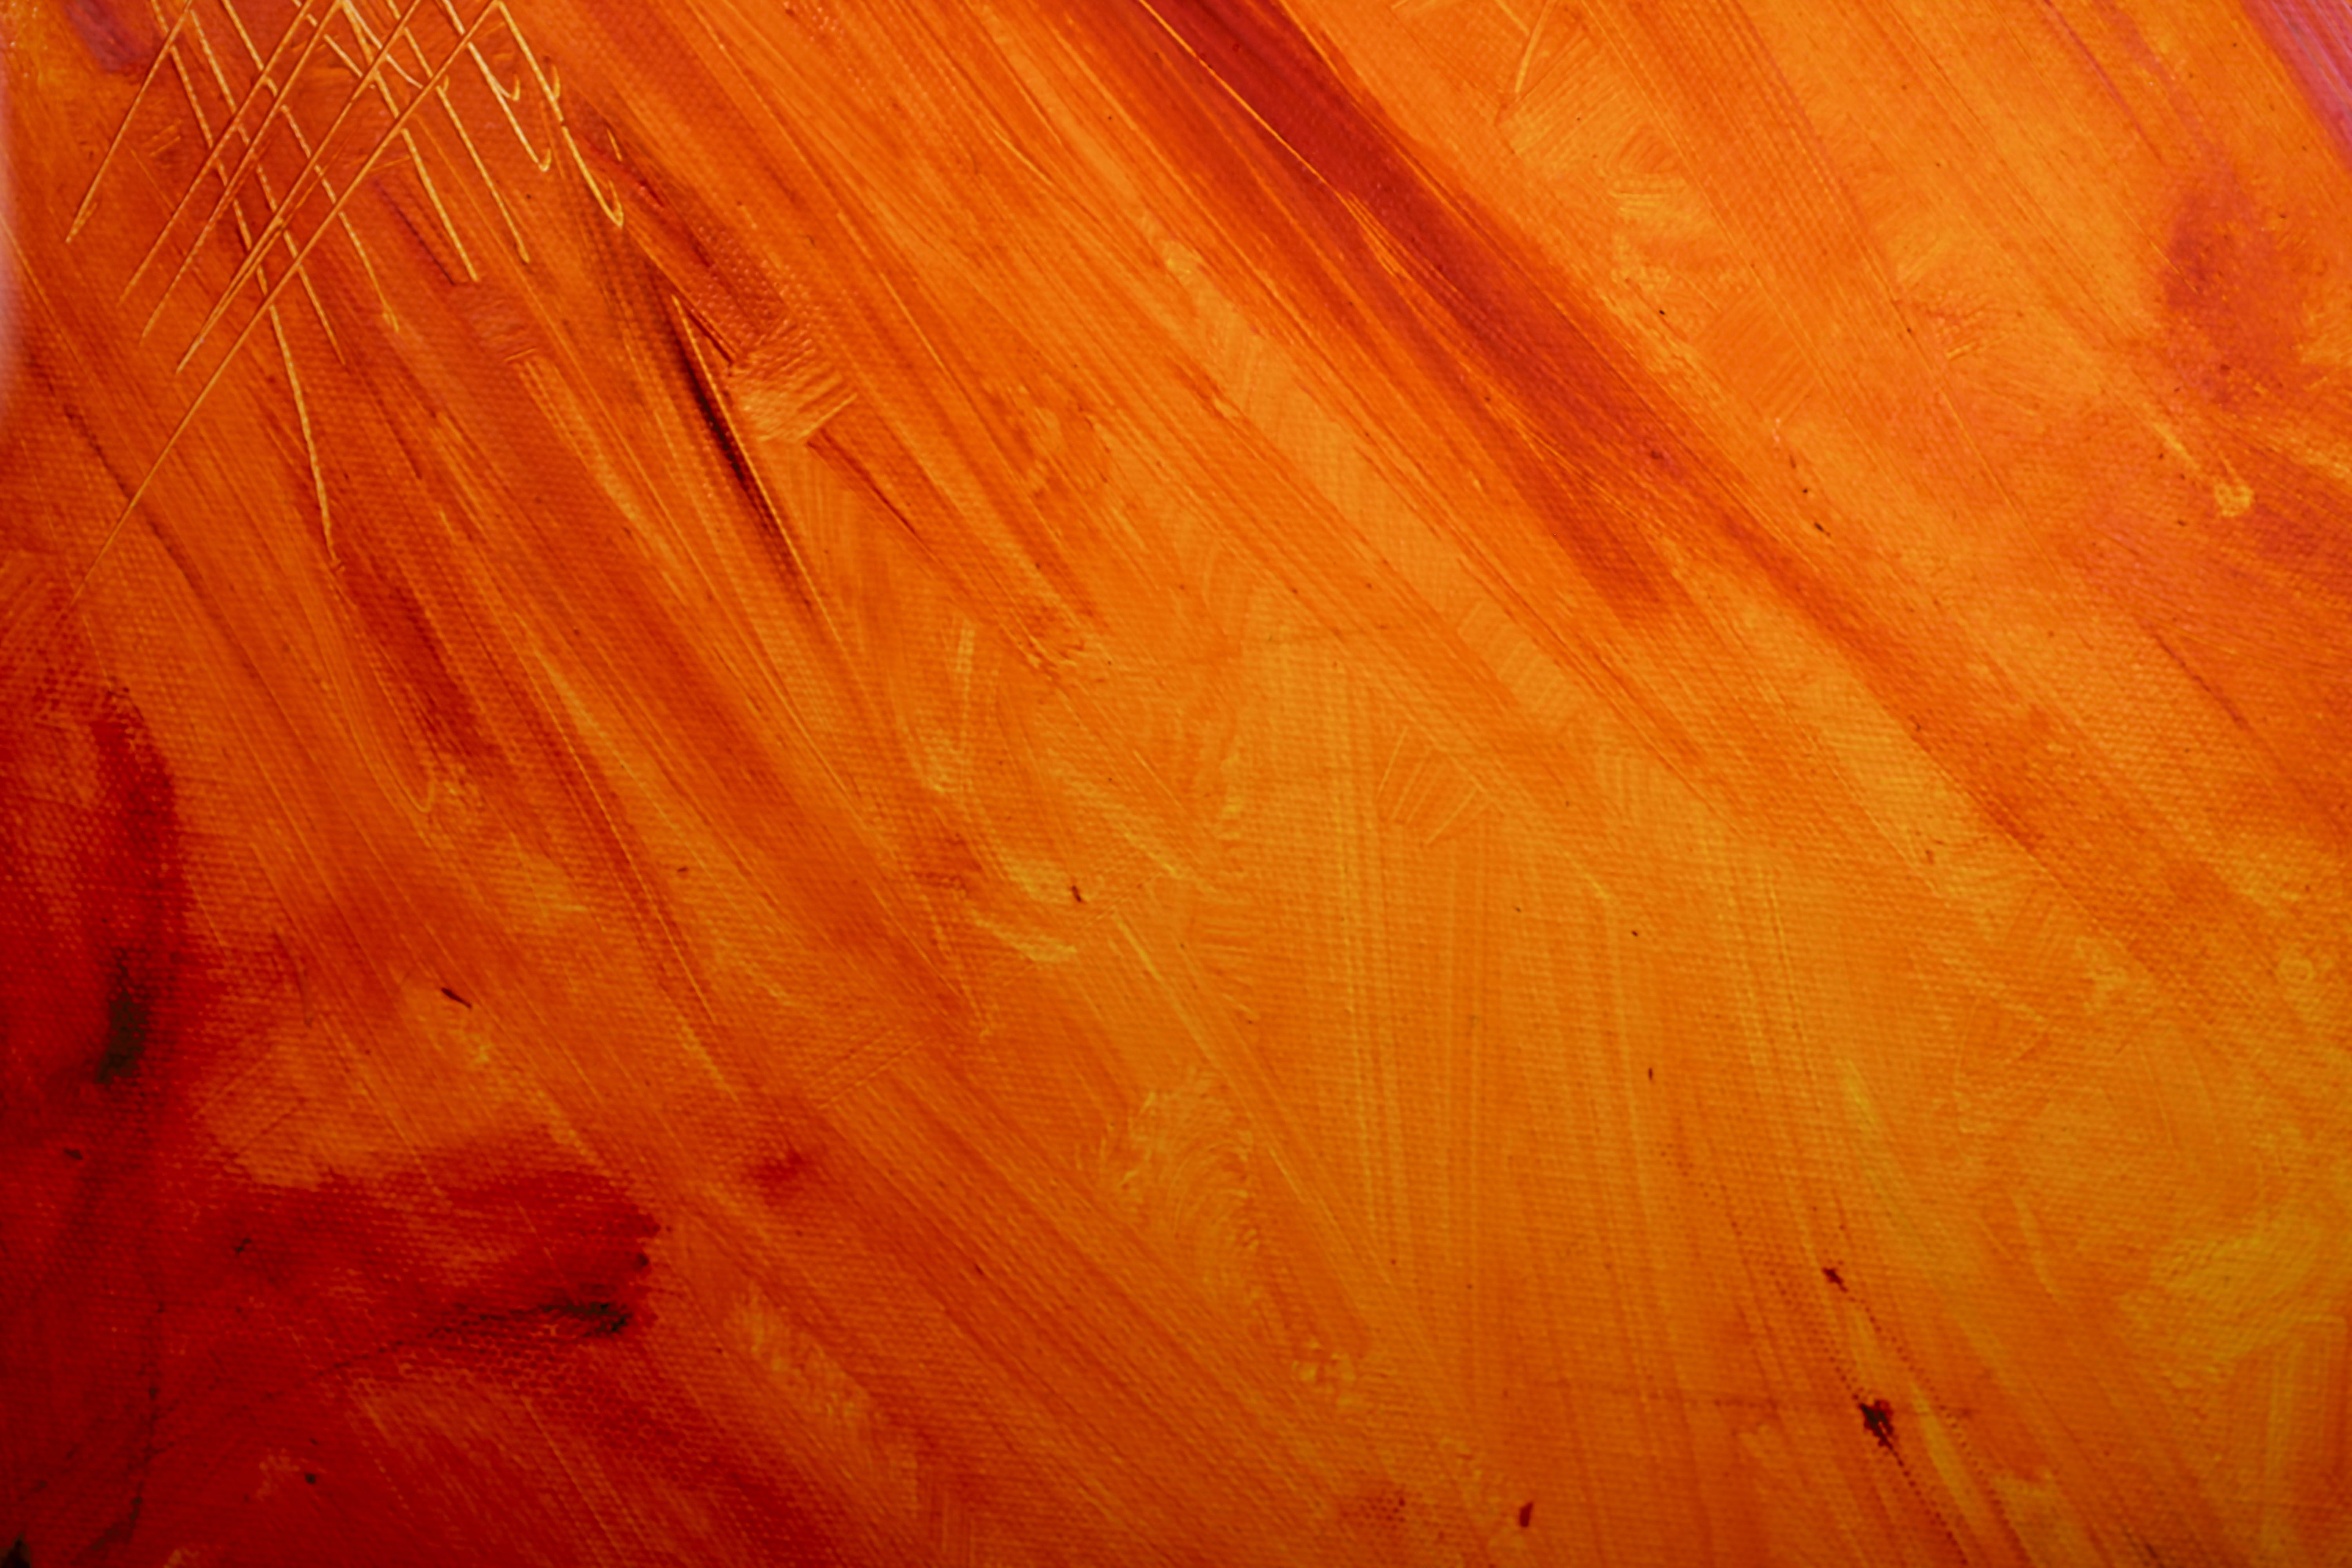 carta da parati arancione rossa,arancia,rosso,giallo,legna,colore caramello